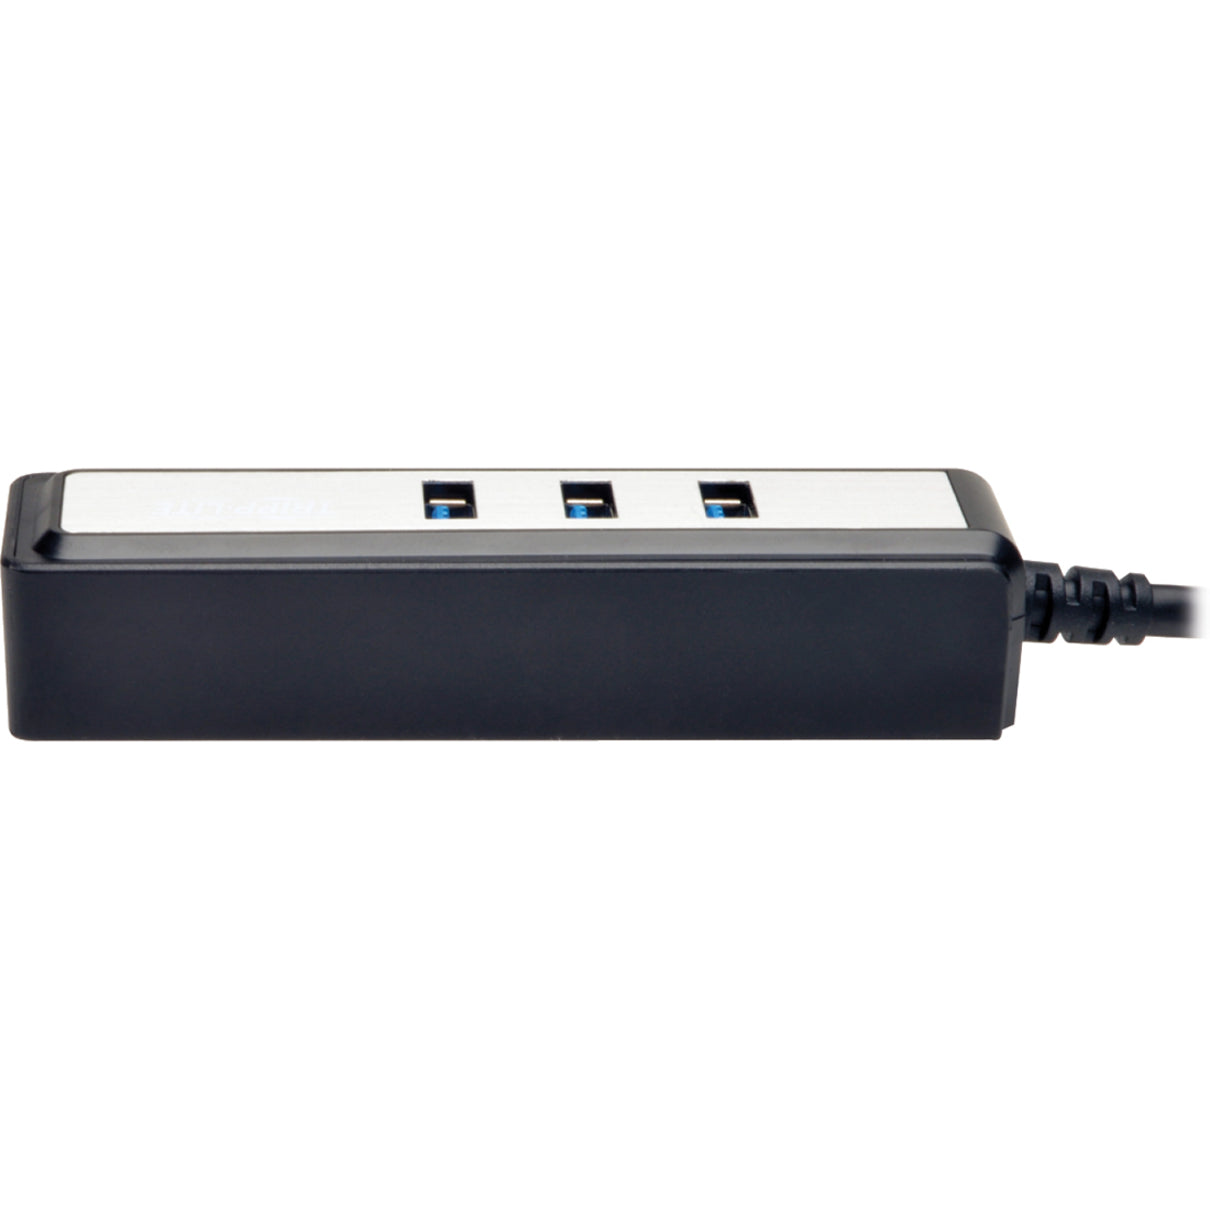 Tripp Lite U360-004-MINI 4-Port Portable USB 3.0 SuperSpeed Hub, Mac/PC Compatible, 3 Year Warranty